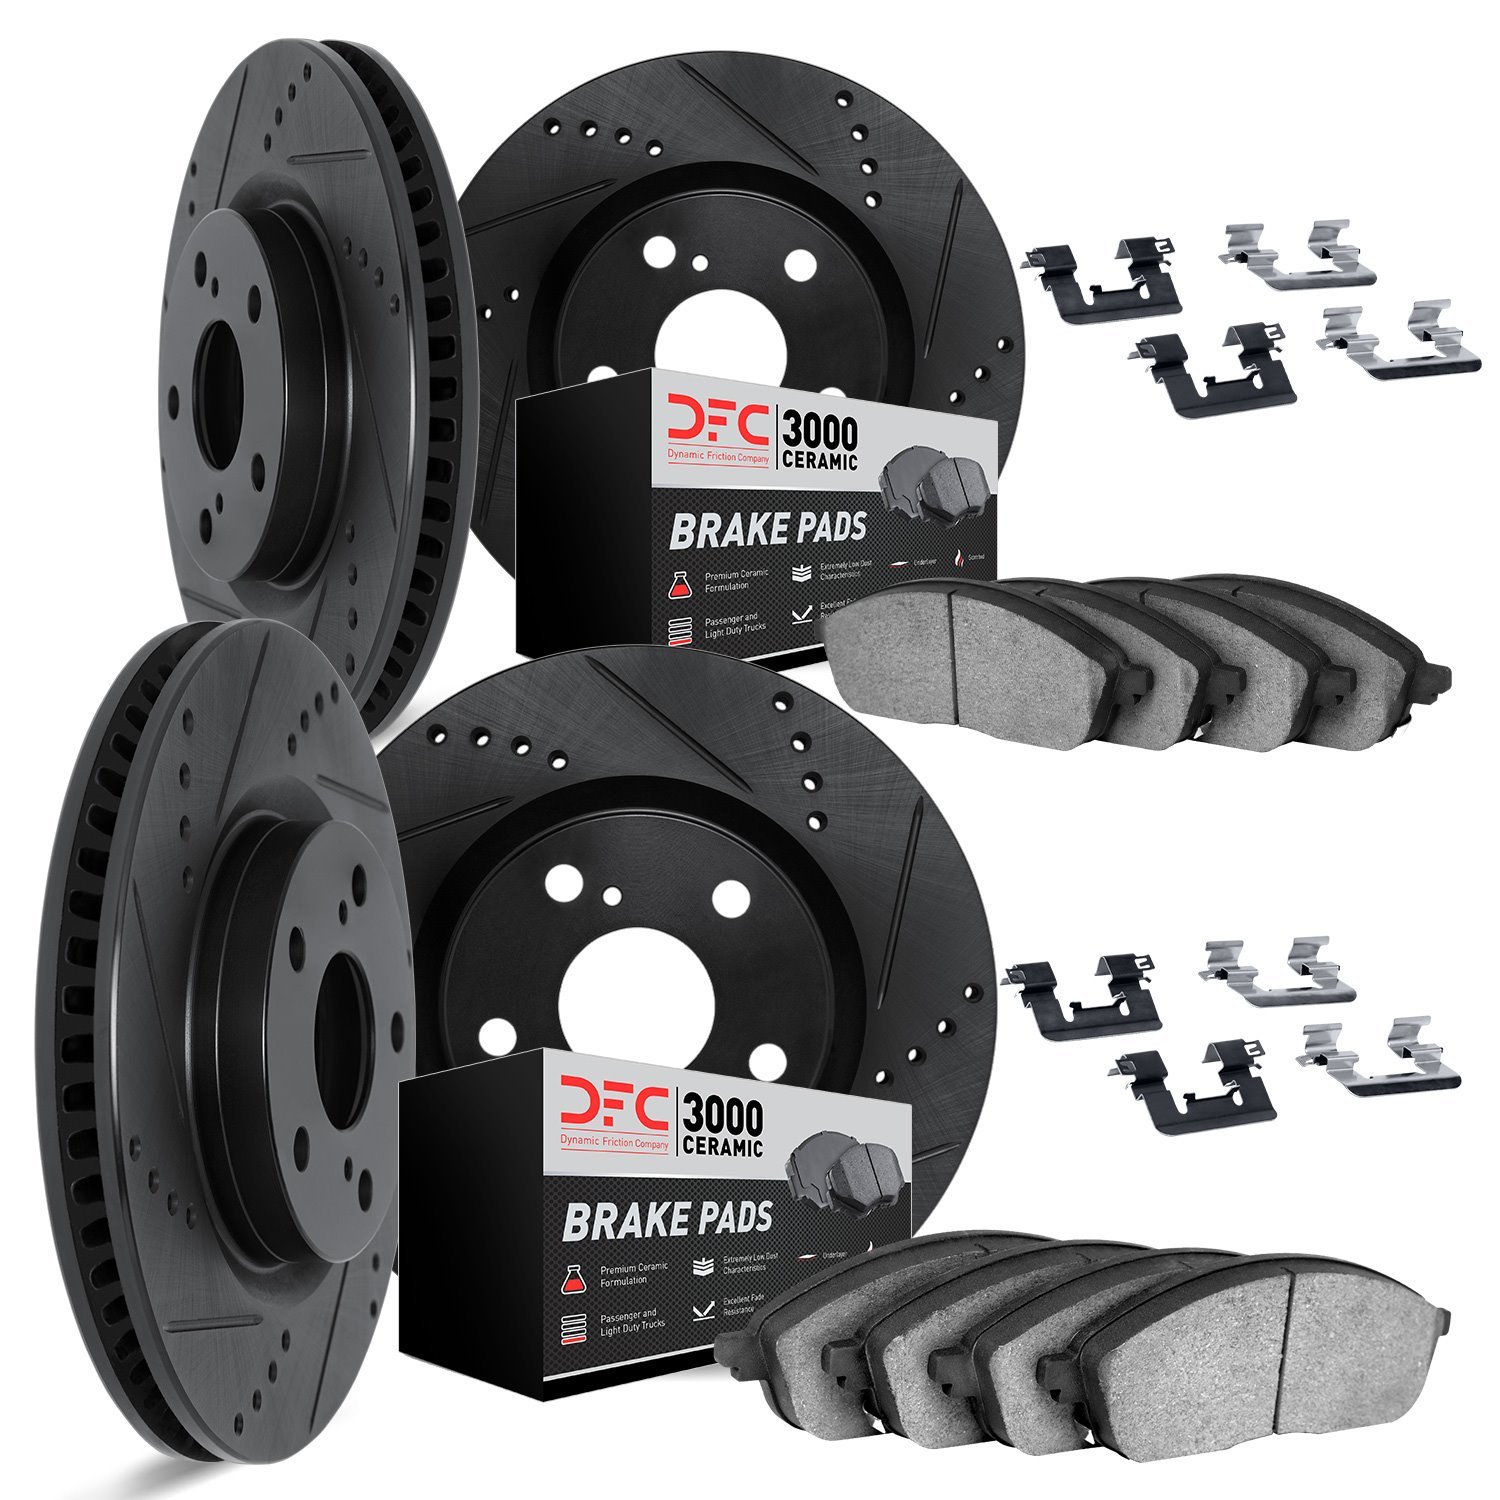 8314-75021 Drilled/Slotted Brake Rotors with 3000-Series Ceramic Brake Pads Kit & Hardware [Black], 2013-2020 Lexus/Toyota/Scion